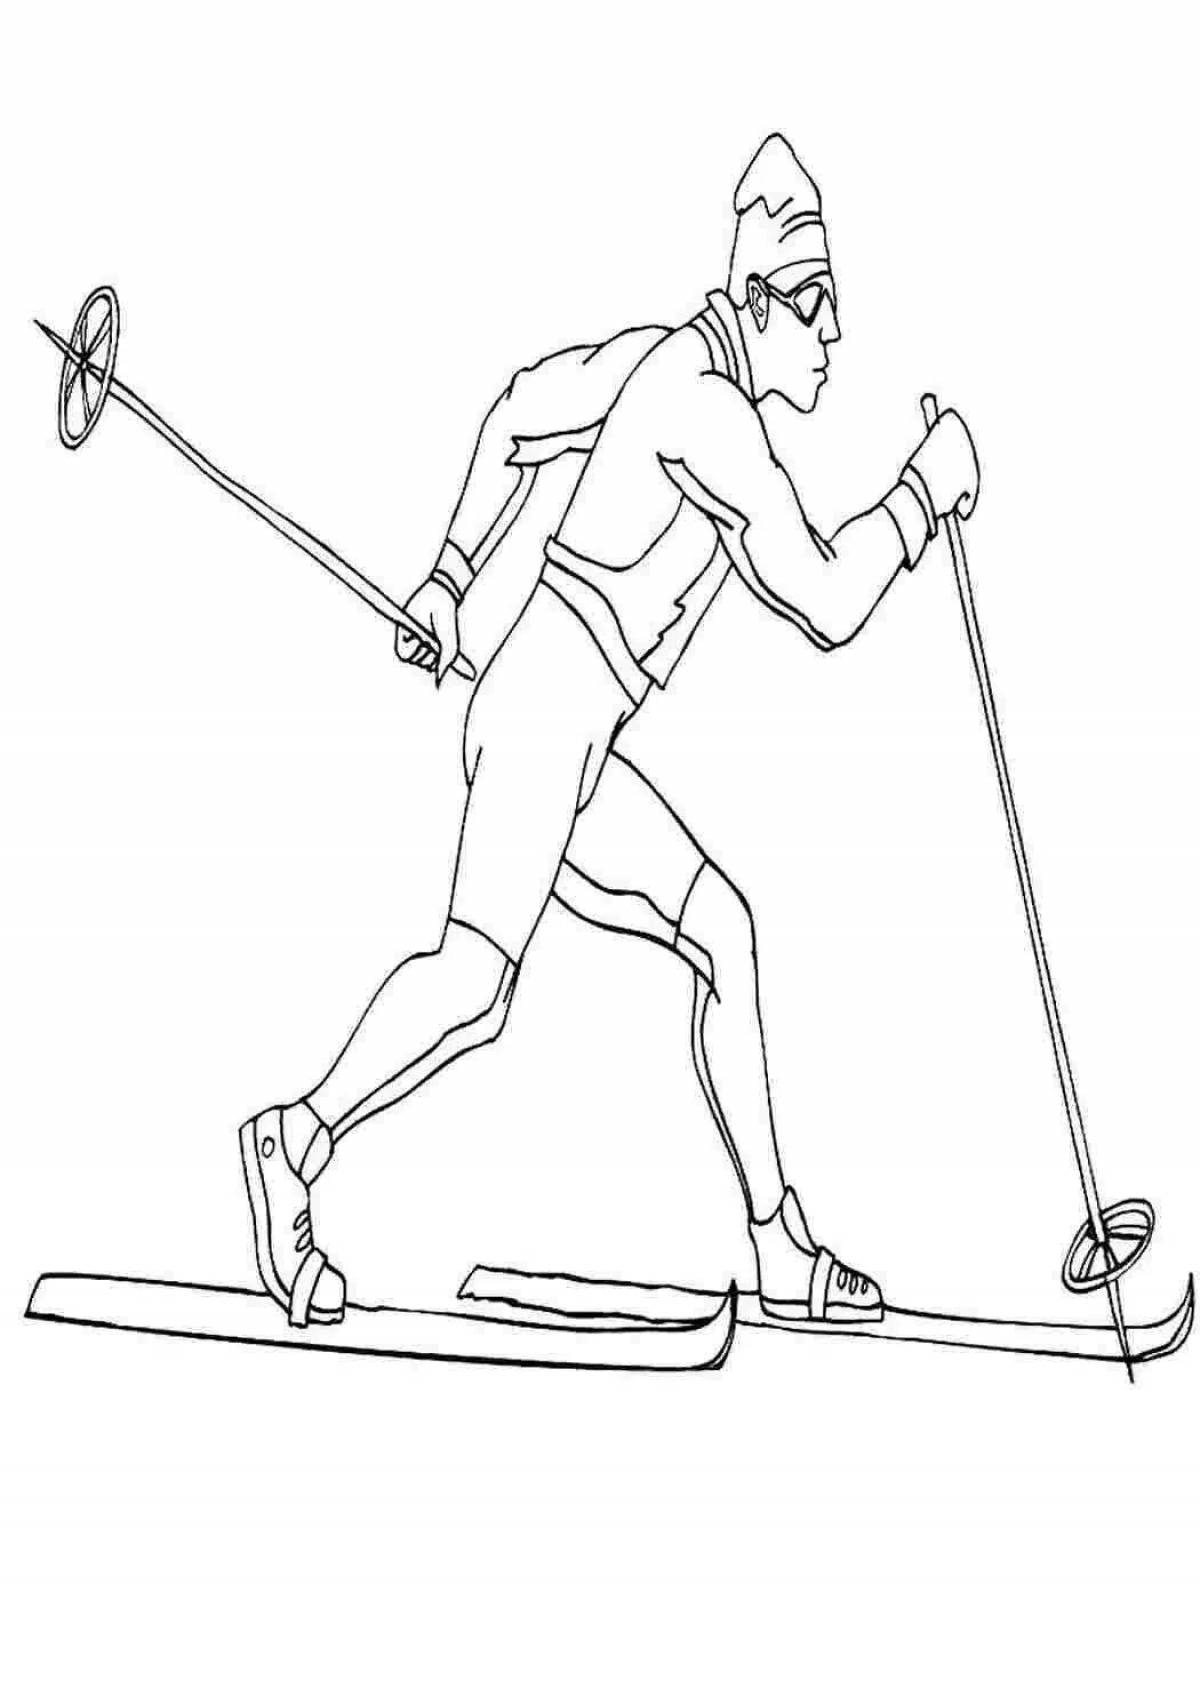 Лыжника в движении #13